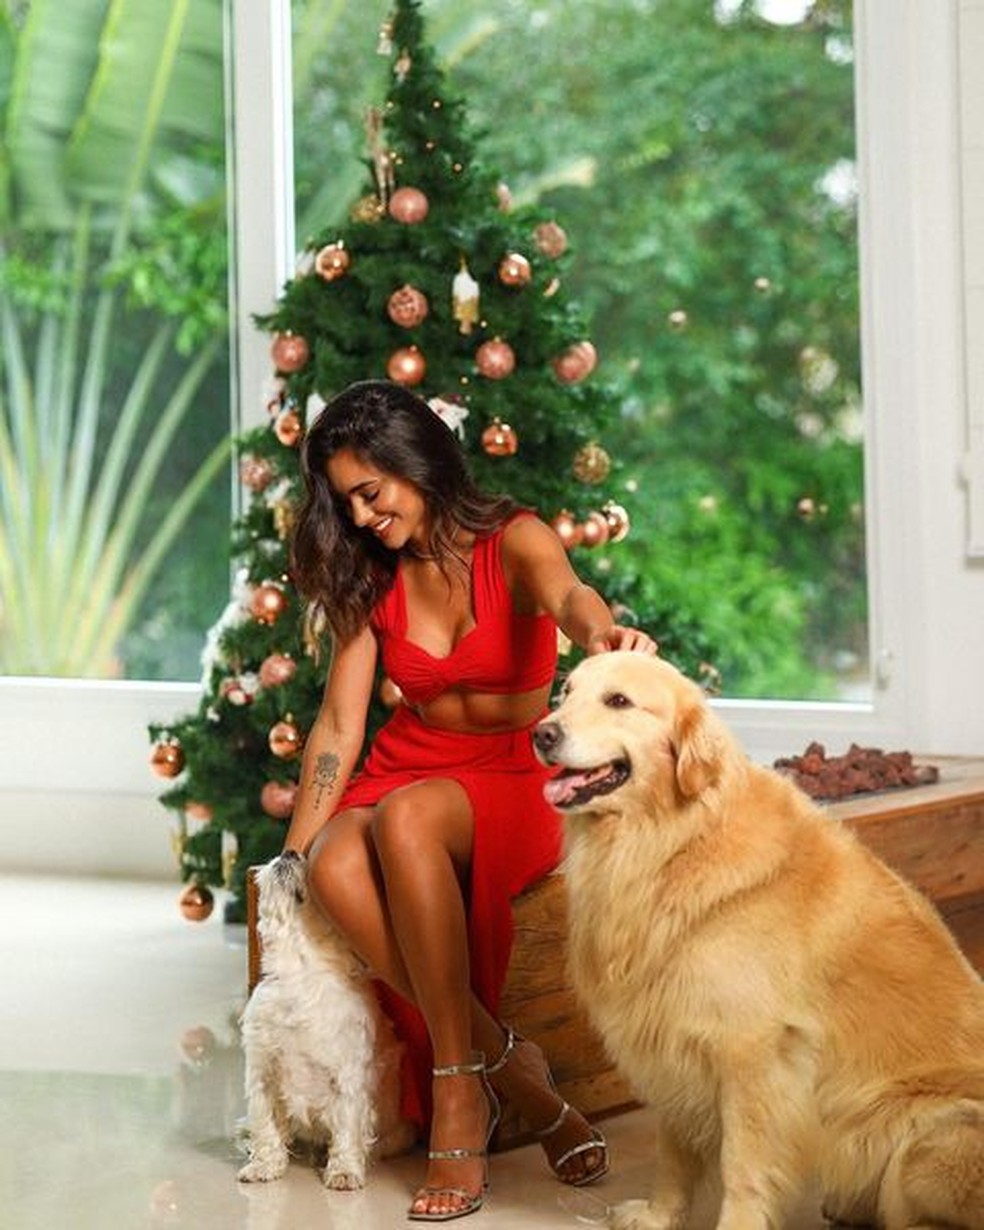 A influencer Bruna Biancardi utilizou uma foto com seus pets em frente à árvore de Natal para expressar os seus votos aos seus seguidores — Foto: Instagram/ @brunabiancardi/ Reprodução